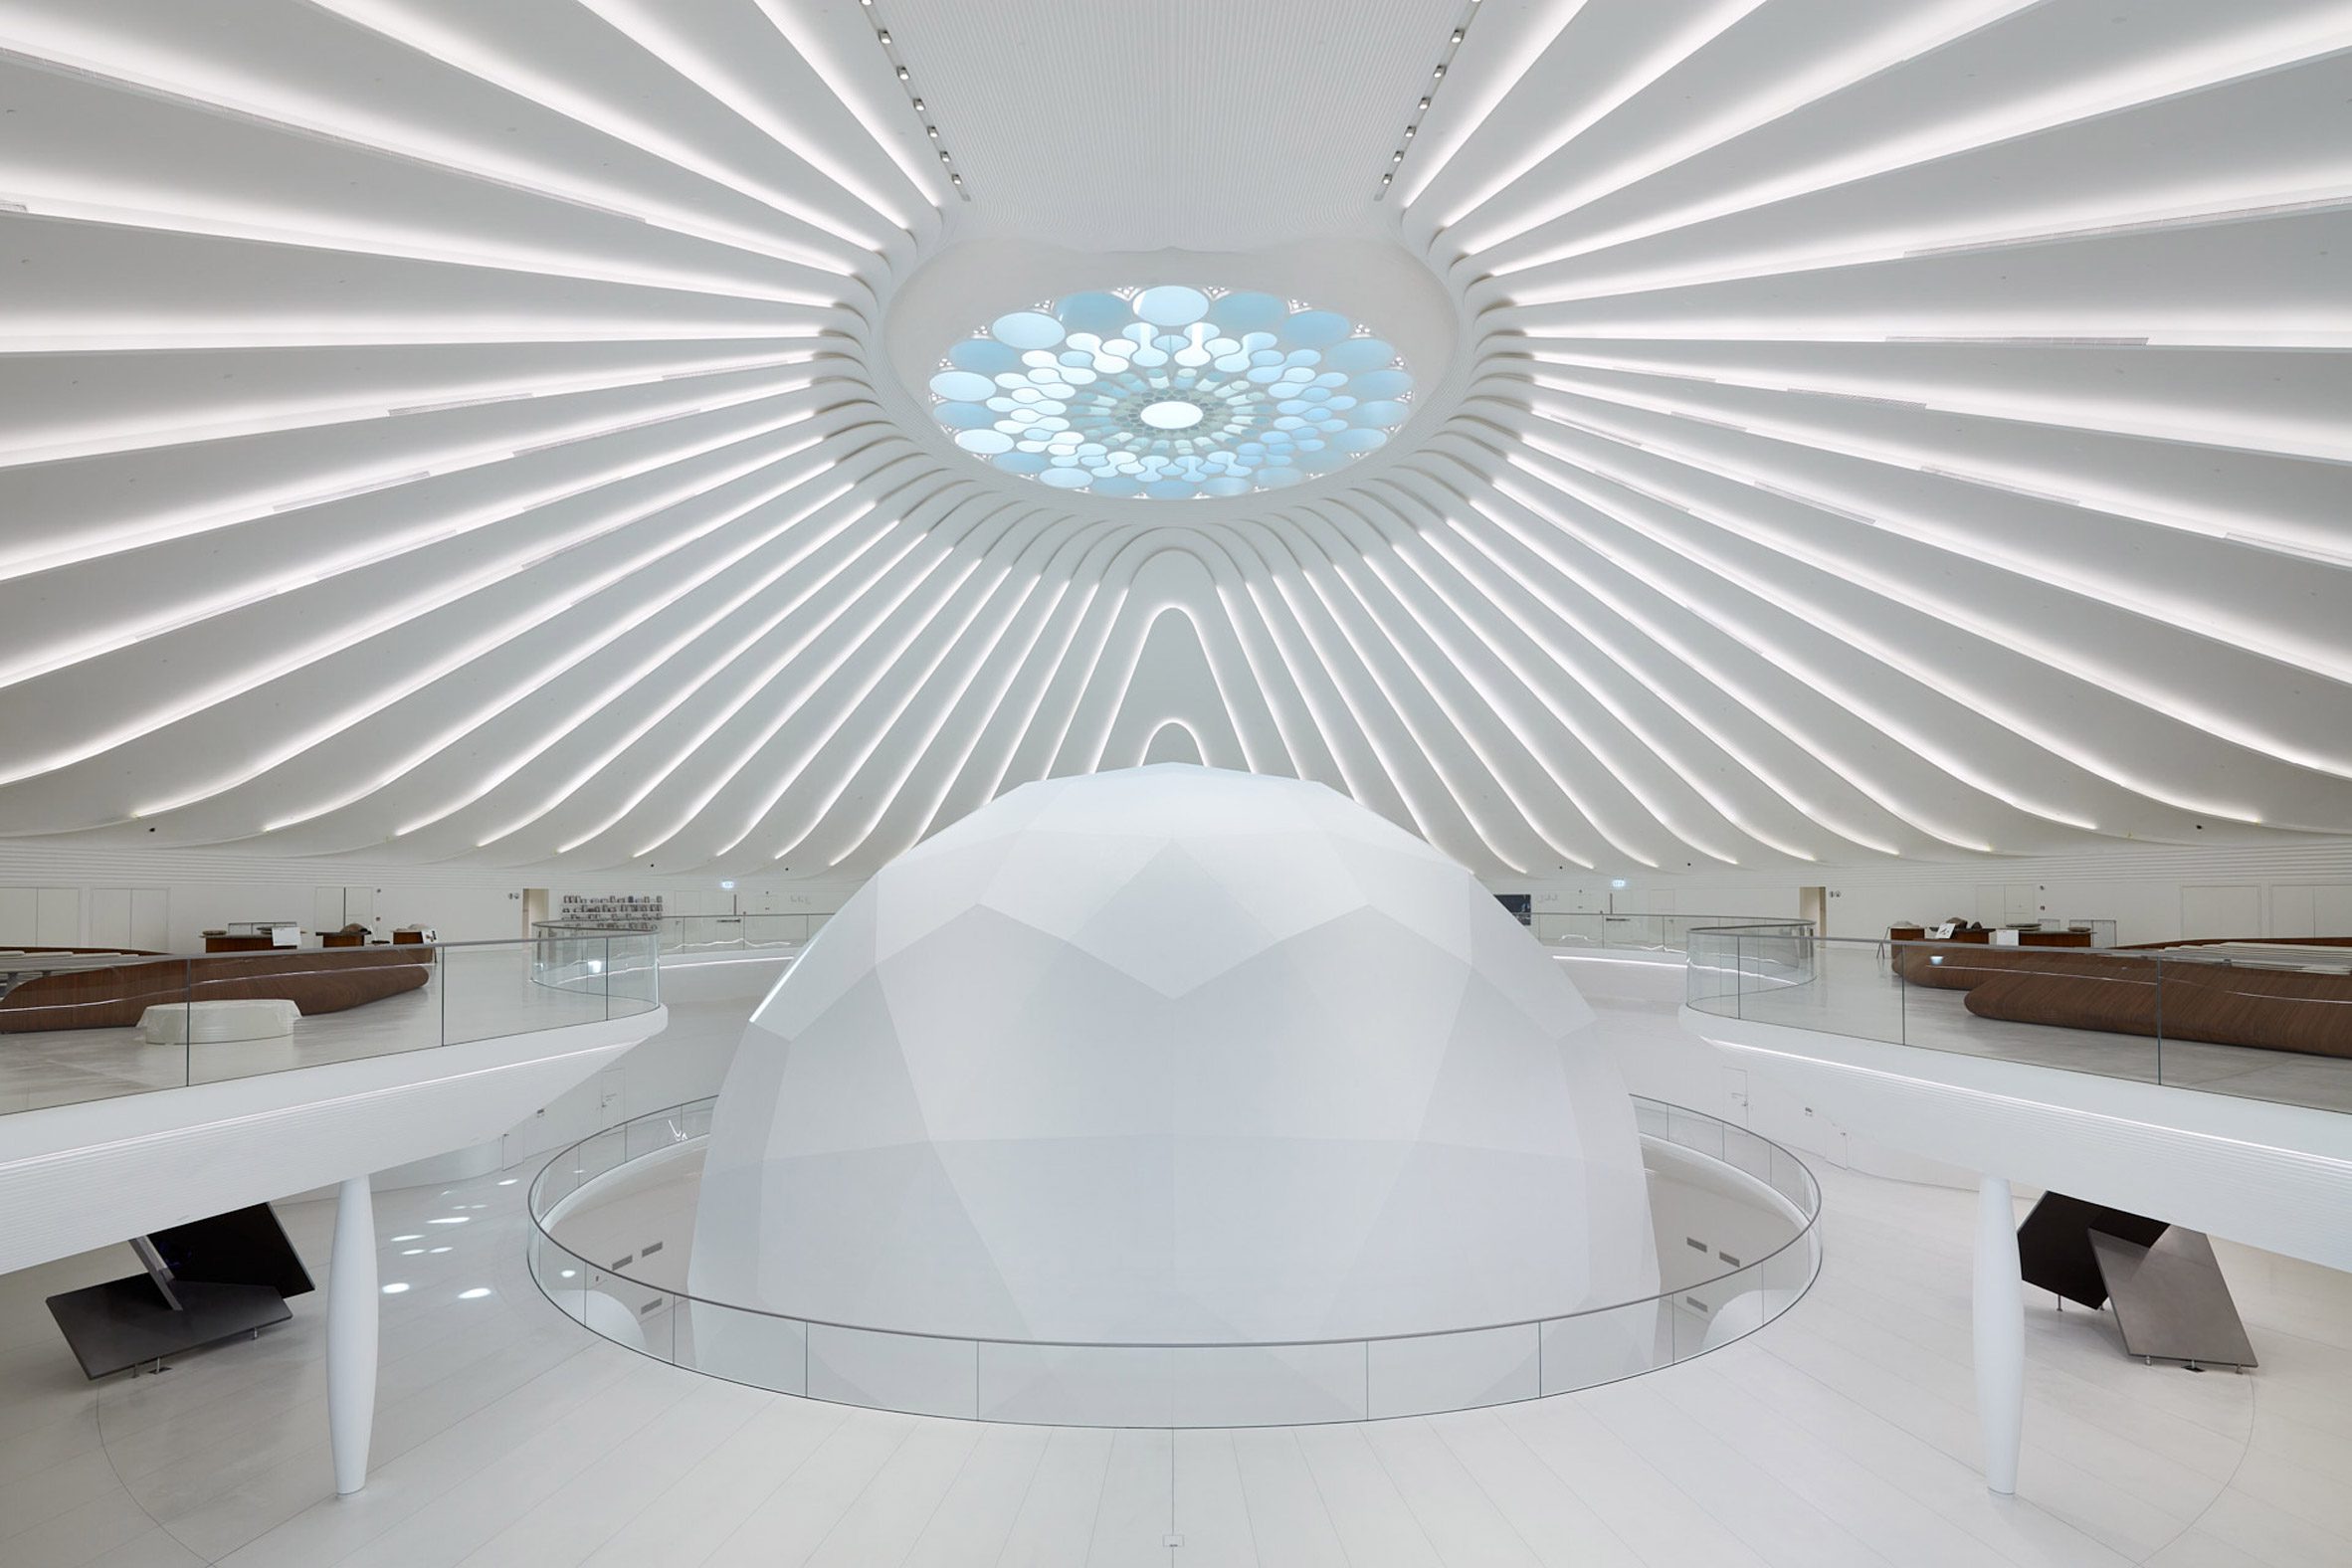 Sphere-shaped auditorium